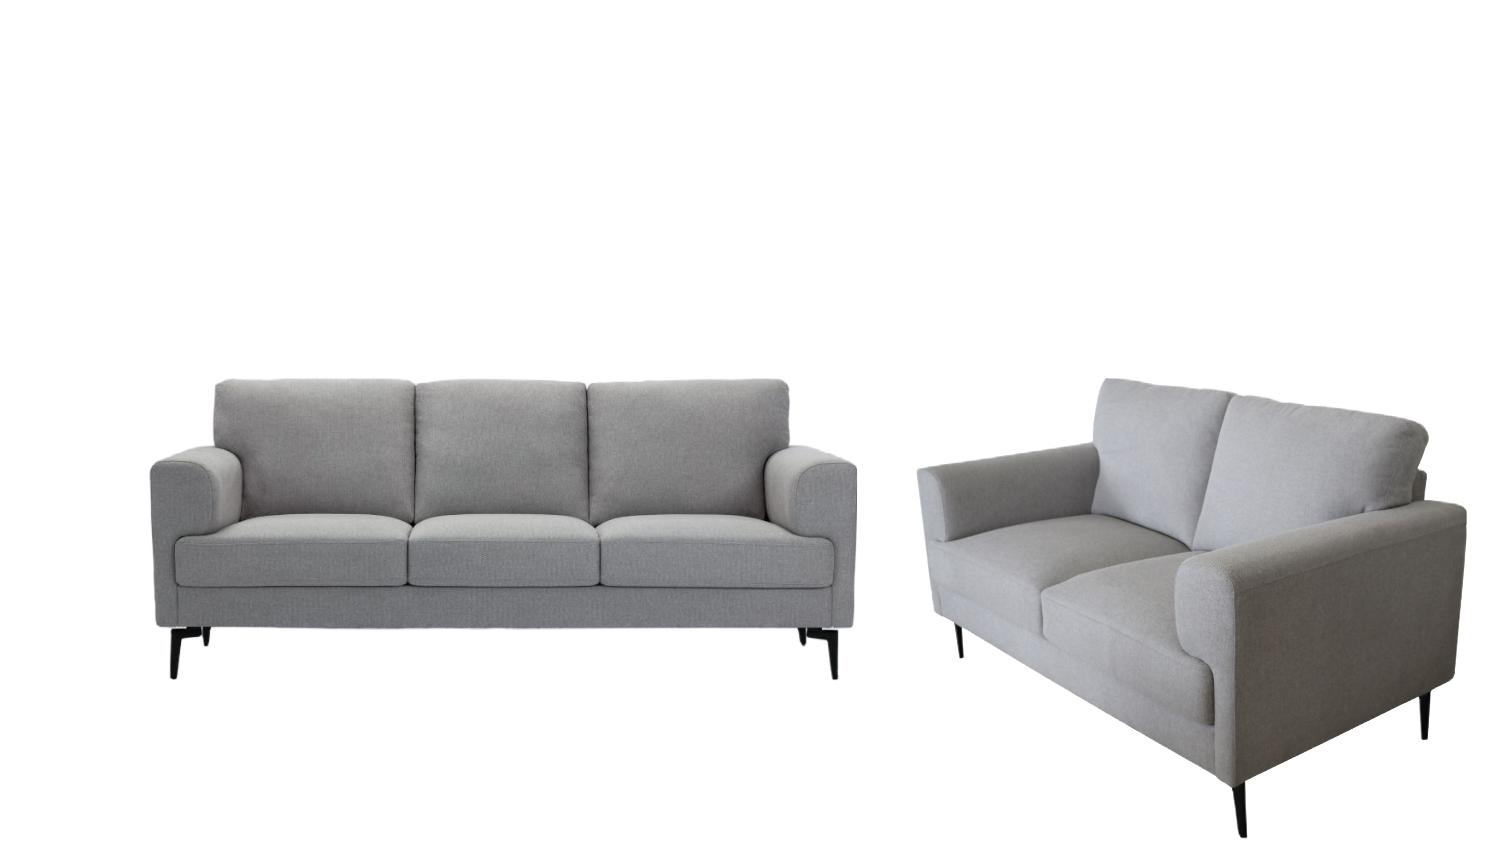 

    
Contemporary Light Gray Linen Sofa + Loveseat by Acme Kyrene 56925-2pcs
